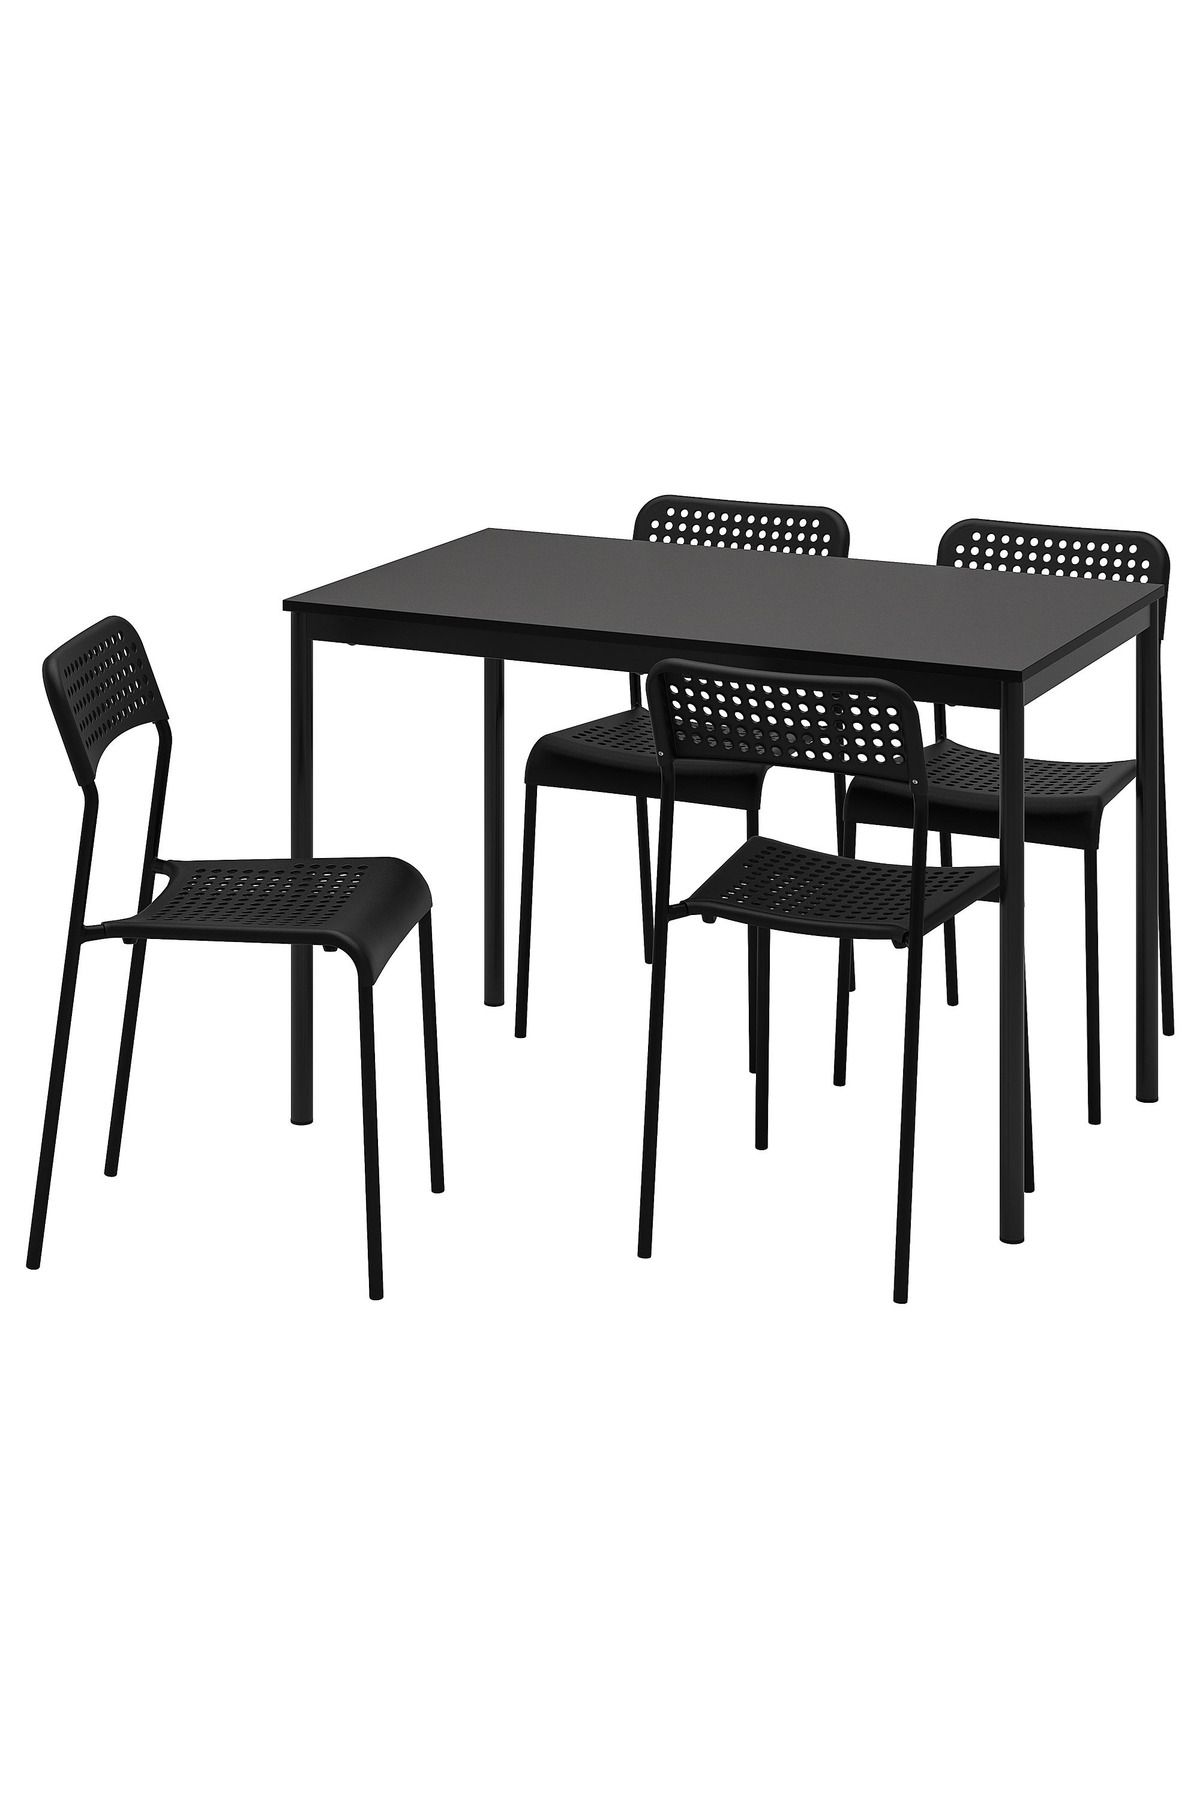 IKEA AKDENİZ SANDSBERG/ADDE siyah 4 sandalyeli mutfak masası takımı